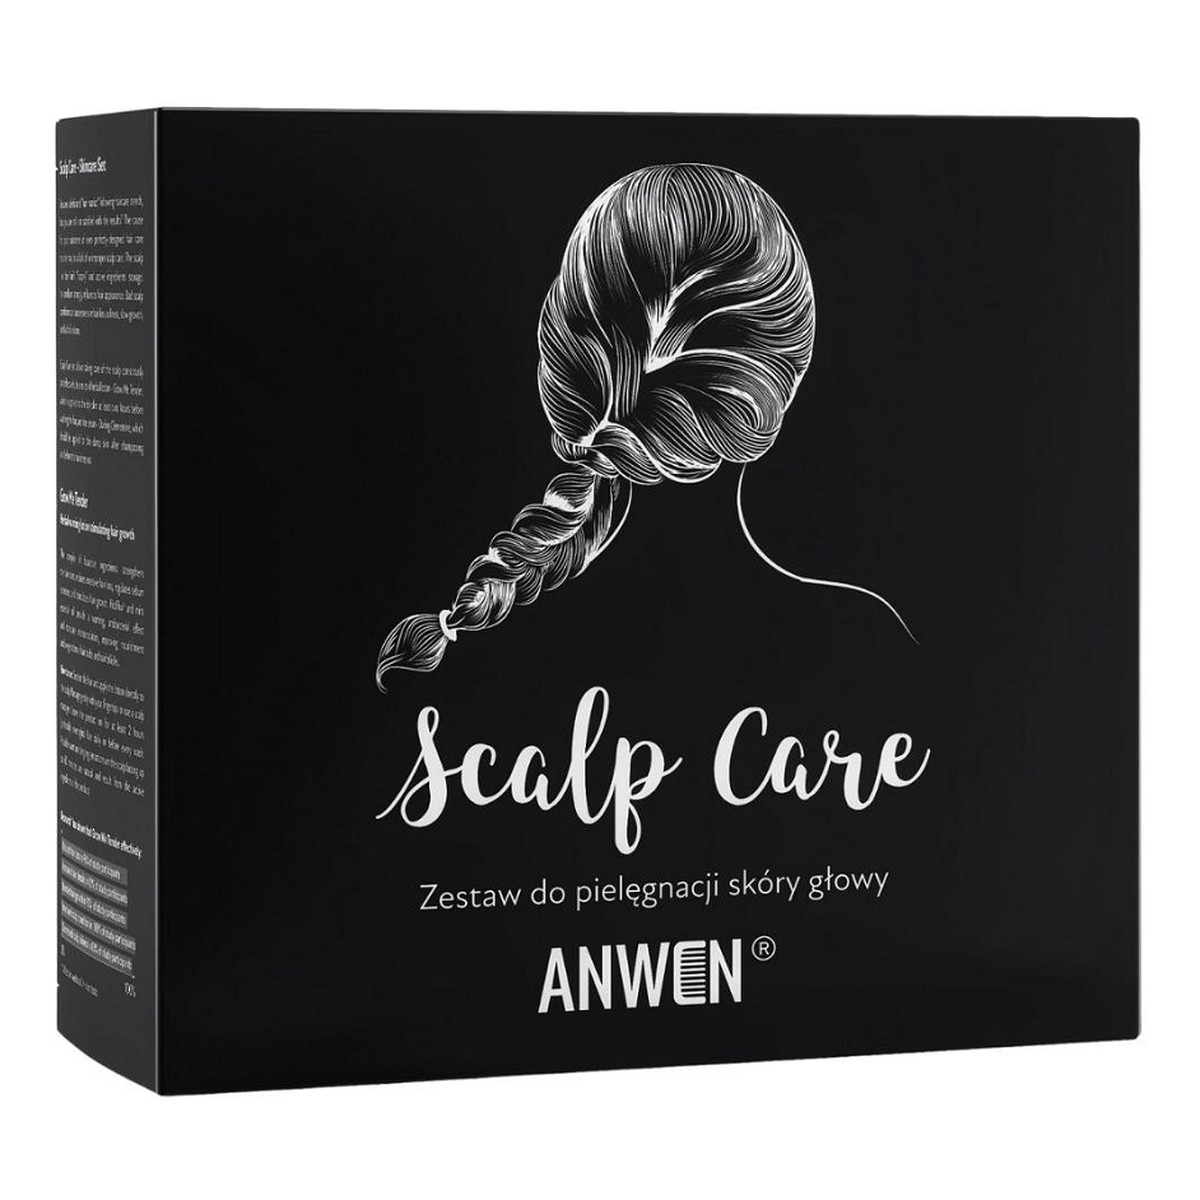 Anwen Scalp Care Zestaw do pielęgnacji skóry głowy grow me tender ziołowa wcierka rozgrzewająca 150ml + darling clementine serum do pielęgnacji skóry głowy 150ml